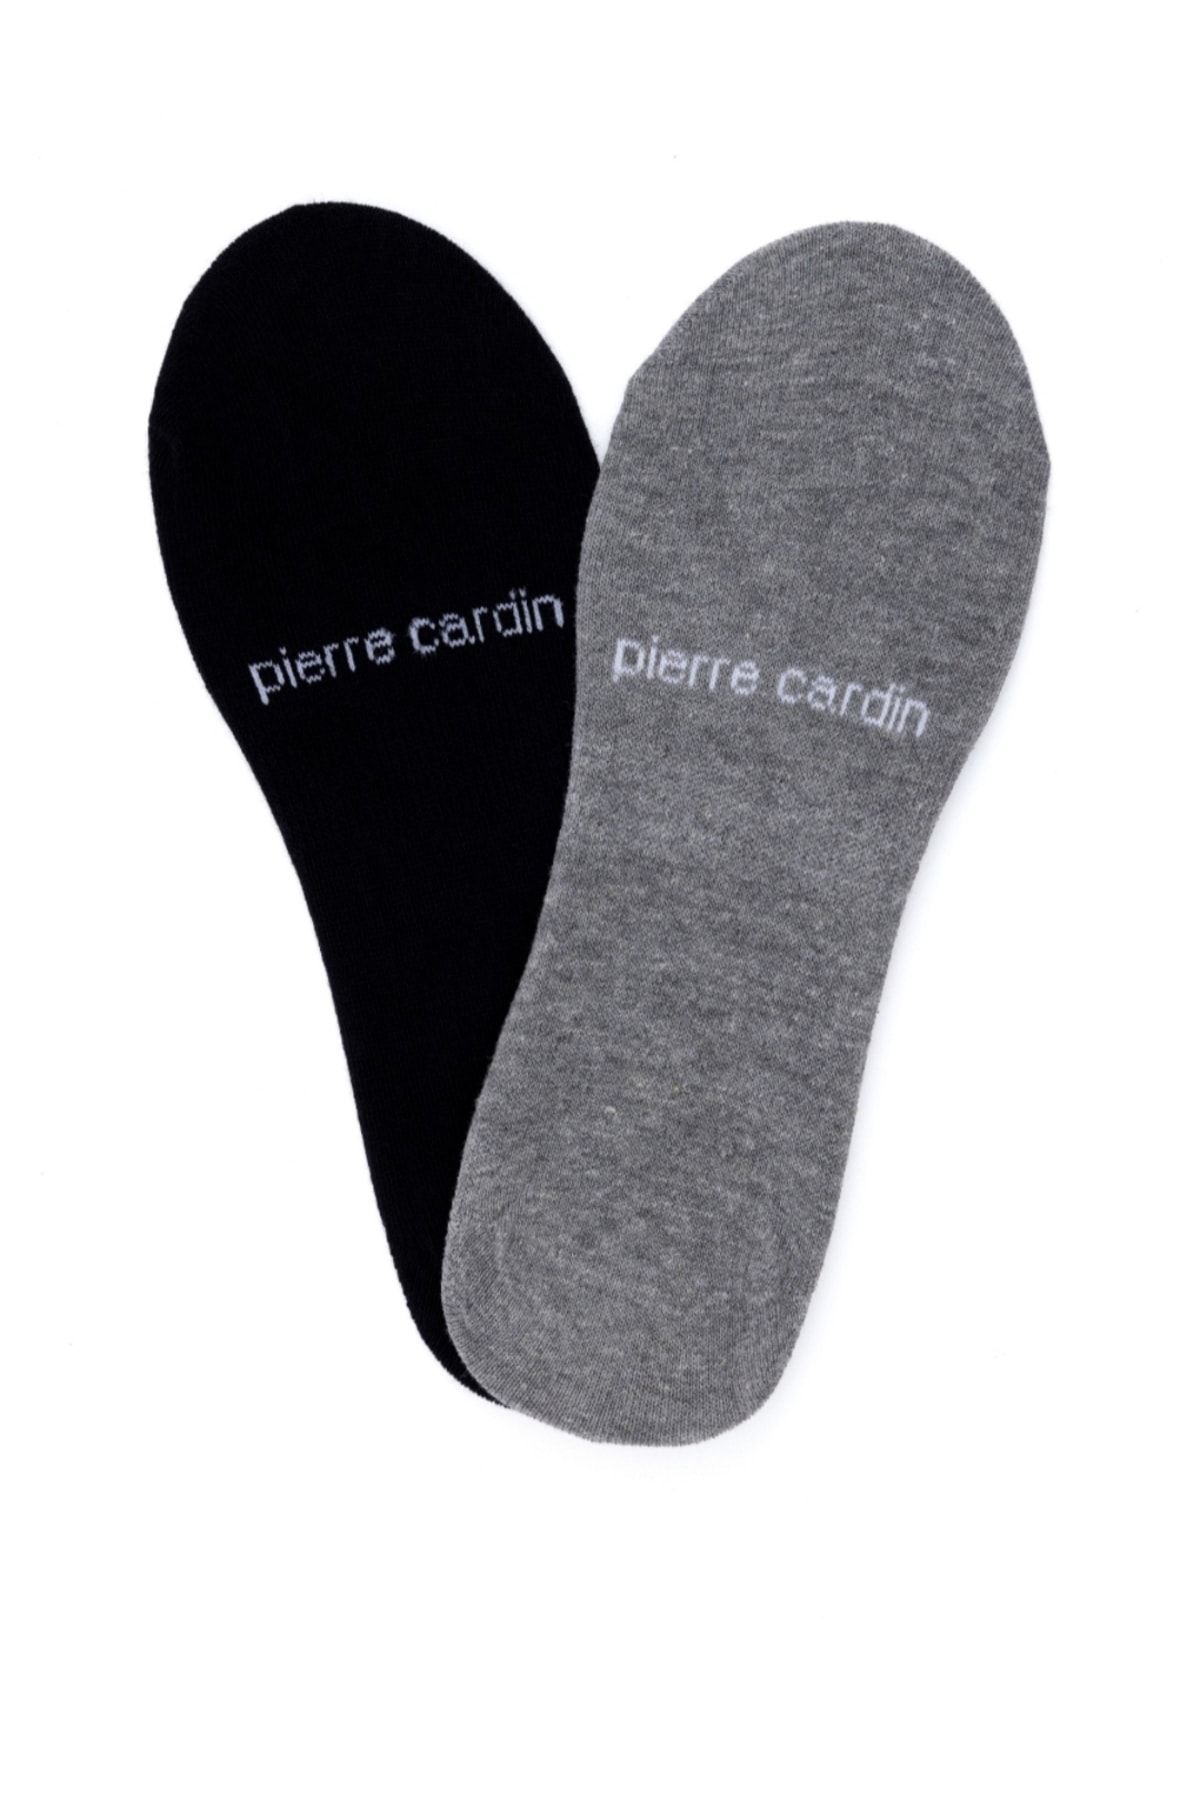 Pierre Cardin کفش های مسطح 2 تکه سیاه زن